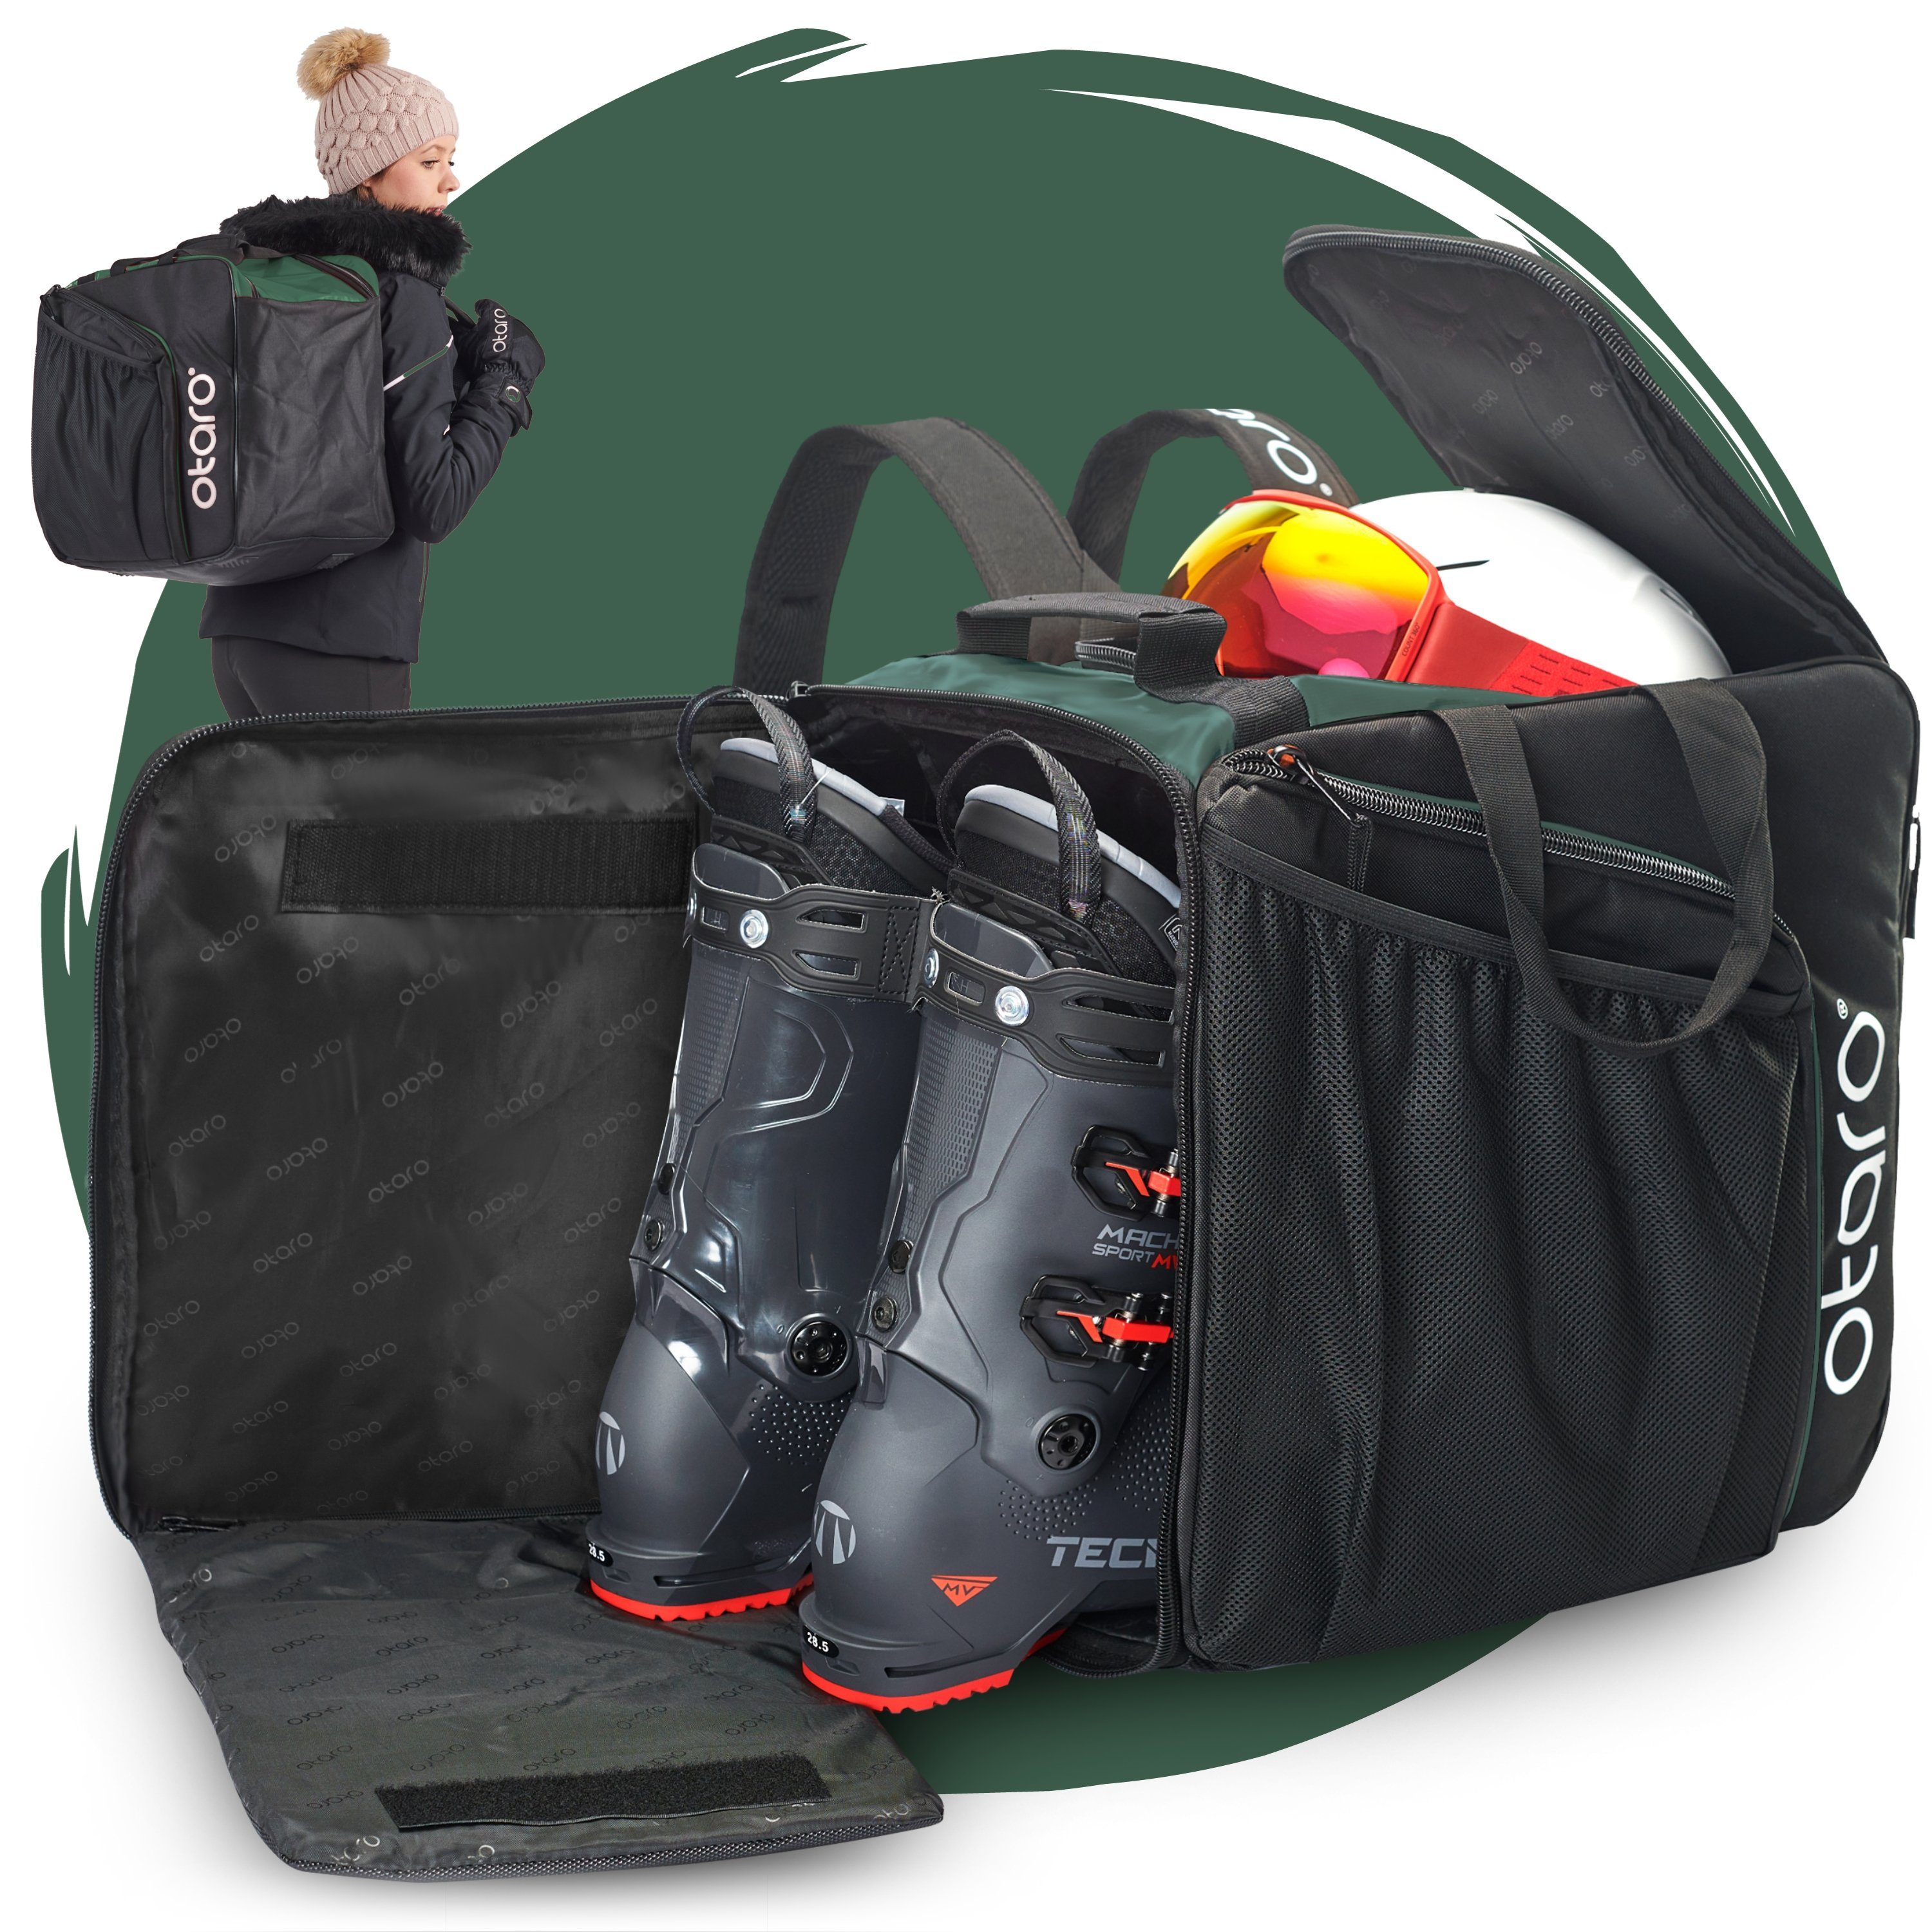 Otaro Sporttasche Skischuhtasche mit Helmfach & bequemen Rucksackträger, Pro 57L (Schutz für deine Ausrüstung, Perfekt durchdacht, ausklappbare Standfläche, für Skifahrer & Boarder) Schwarz Tannengrün